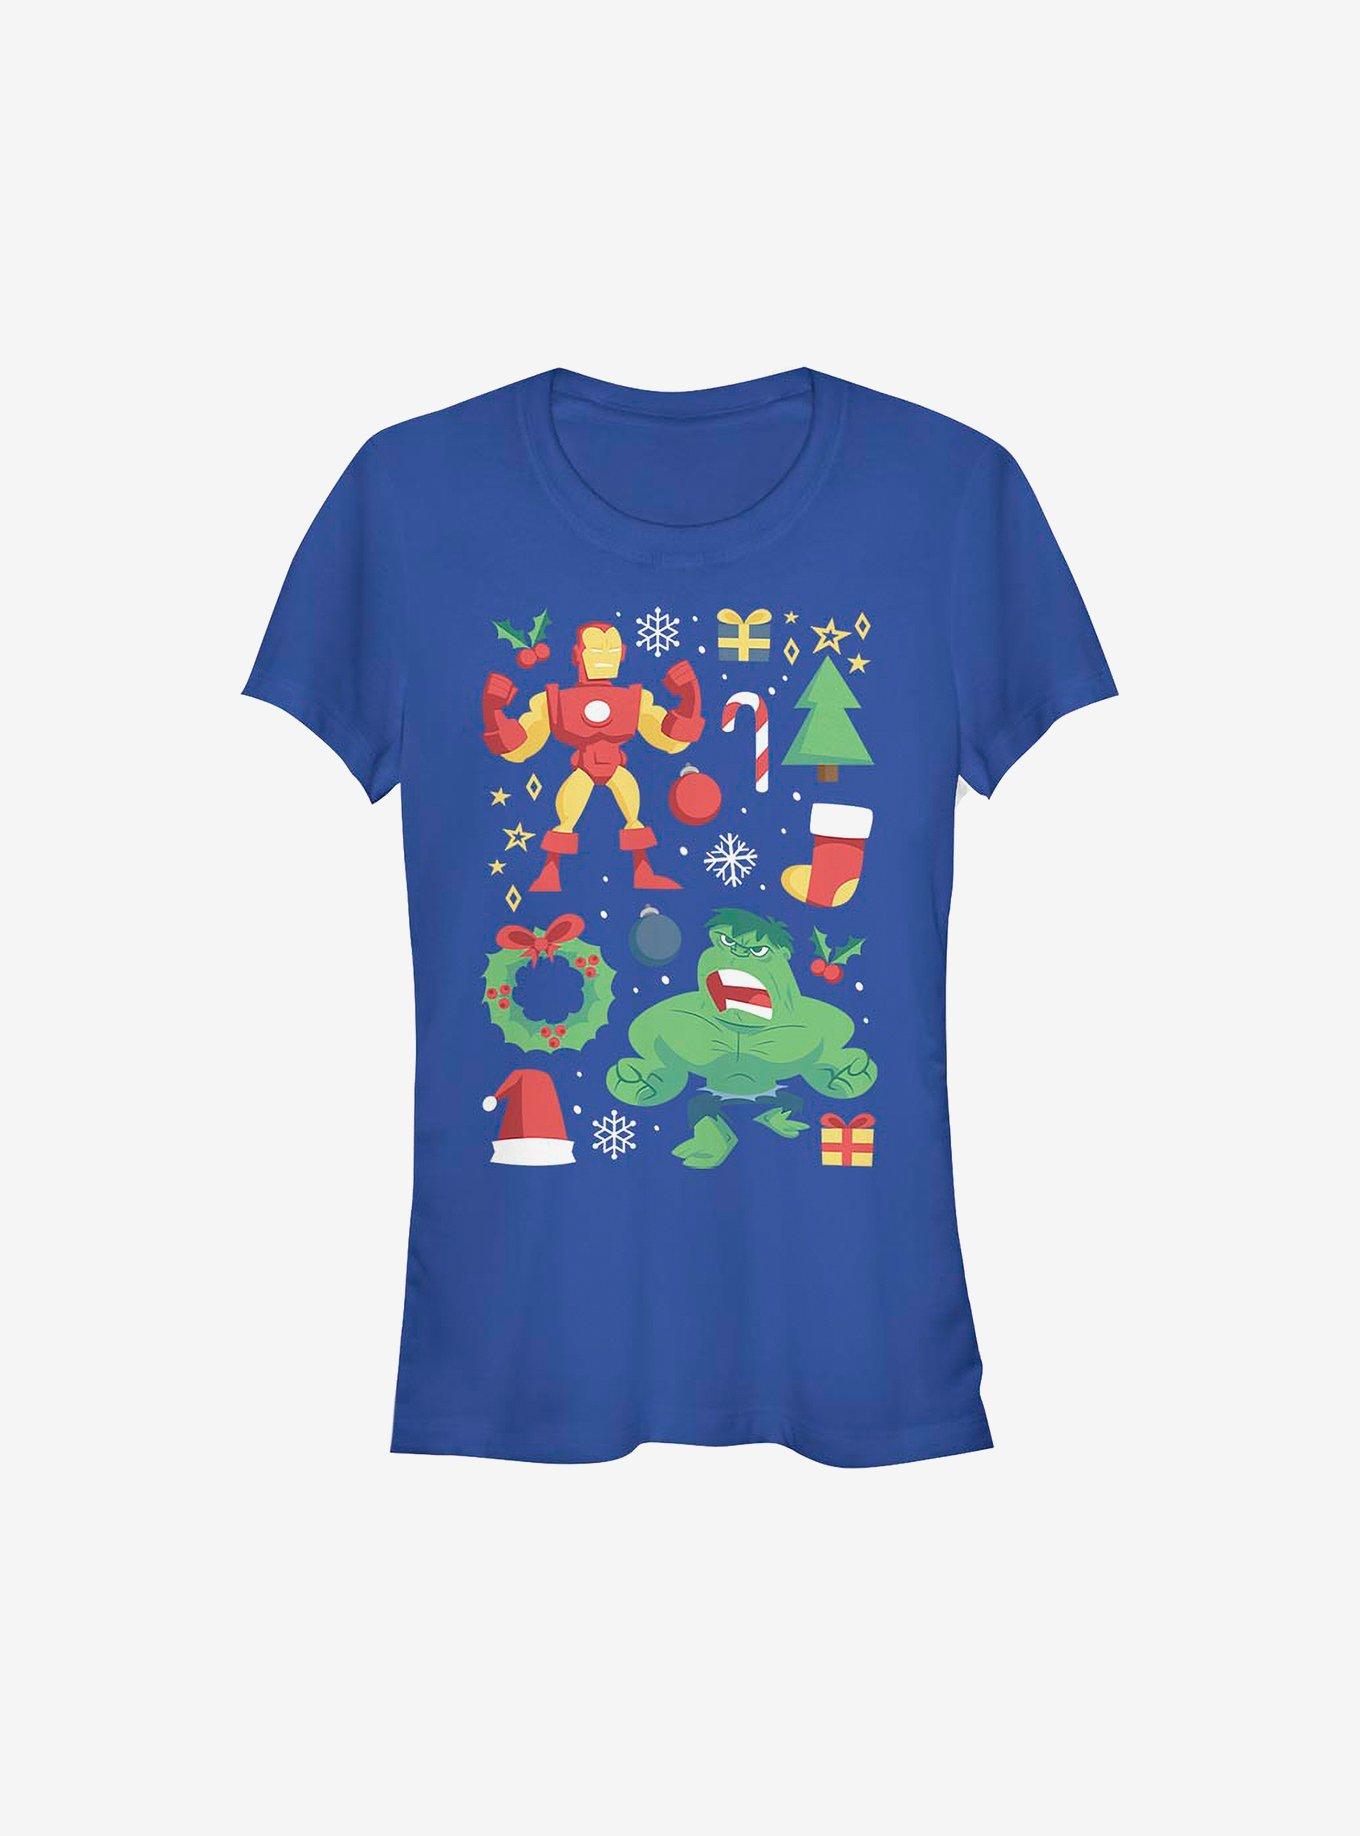 Marvel Avengers Holiday Cheer Girls T-Shirt, ROYAL, hi-res